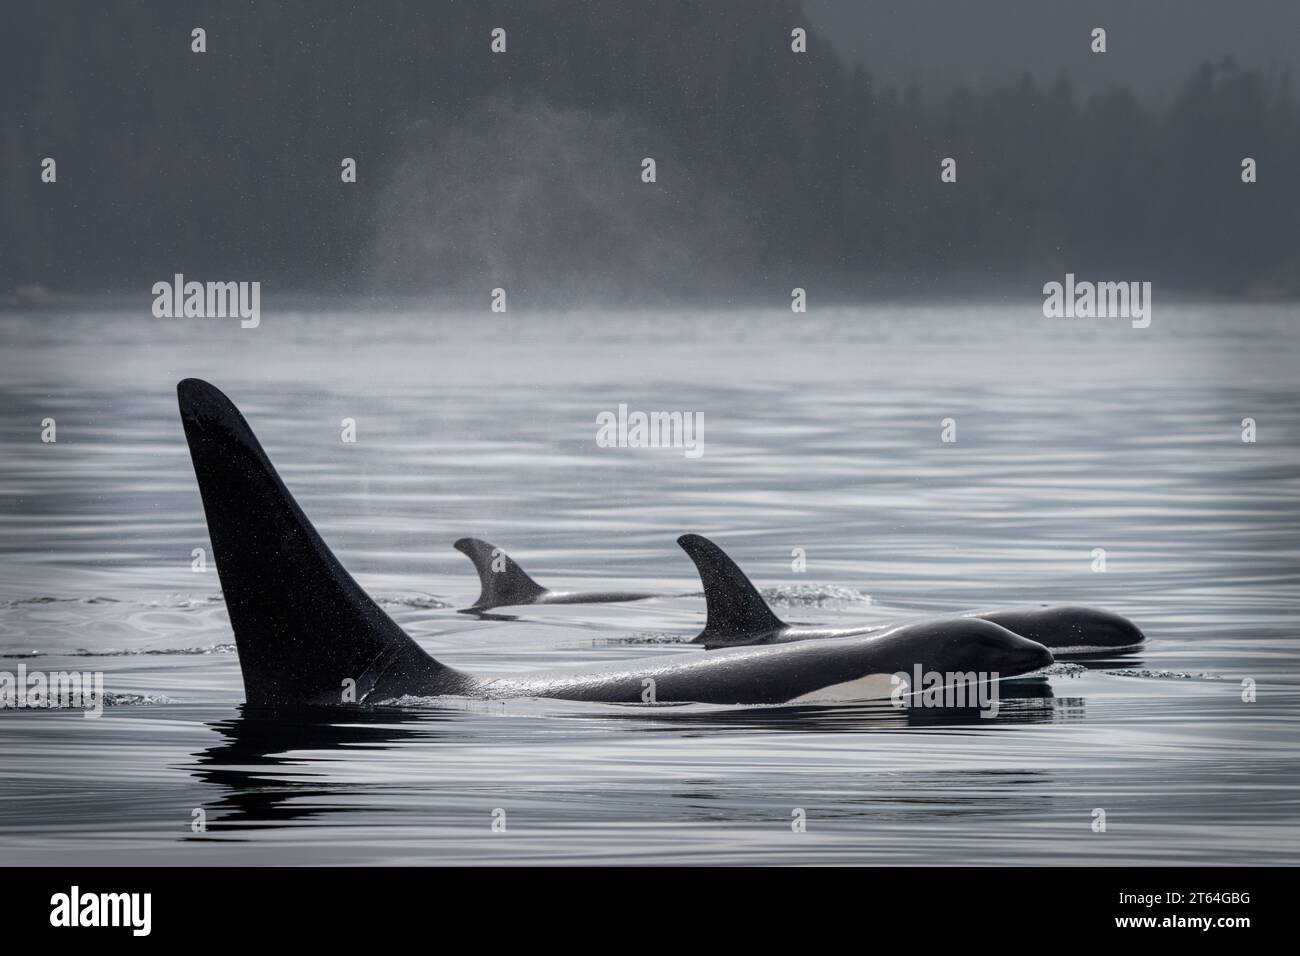 Balene Orca residenti nel nord (balene assassine, Orcinus orca) nello stretto di Johnstone, territorio delle prime Nazioni, territori tradizionali del Kwakwaka'wakw Foto Stock